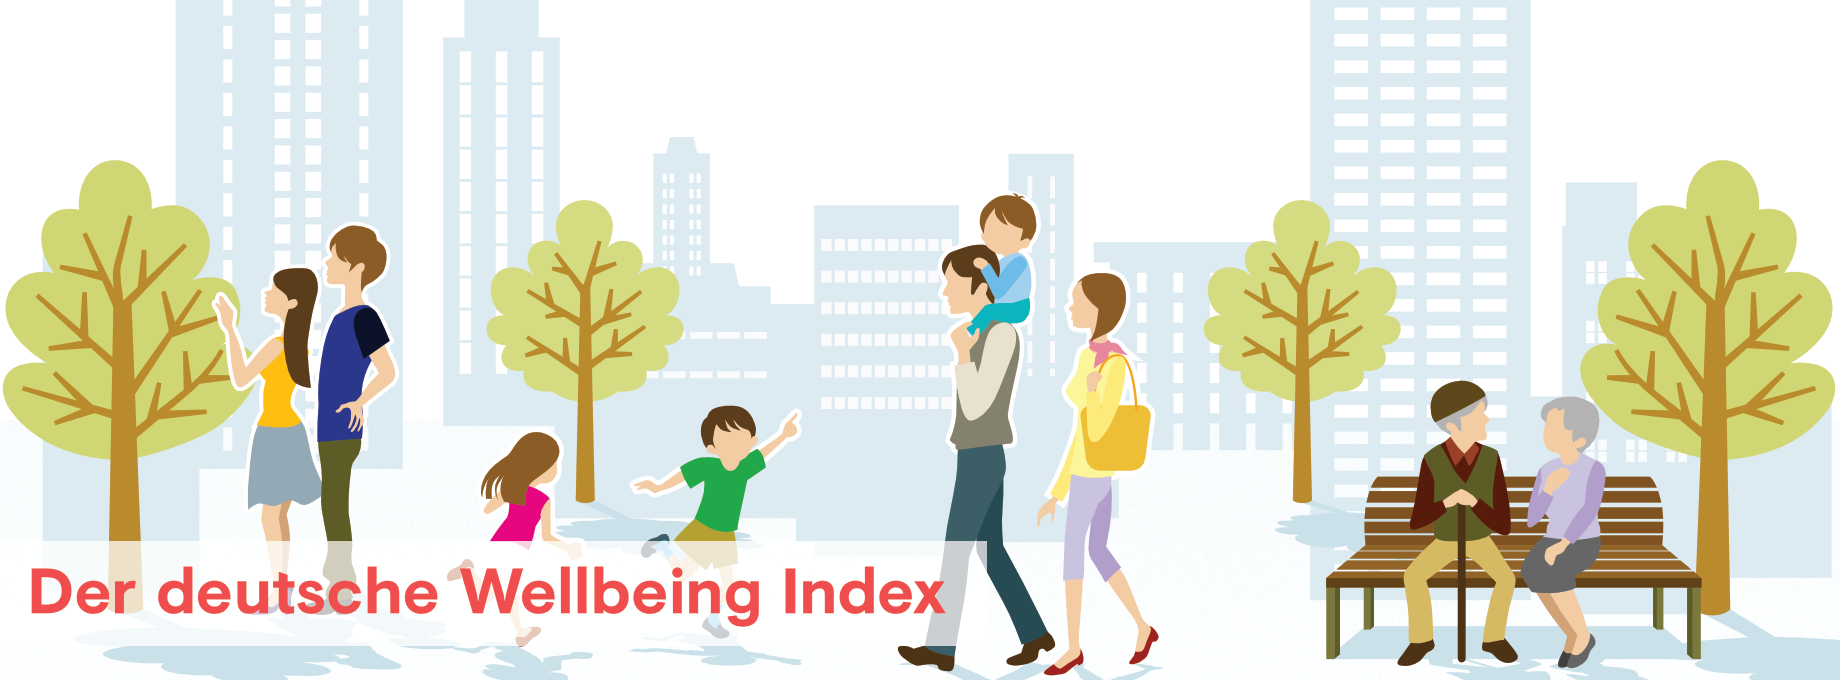 wellbeing index